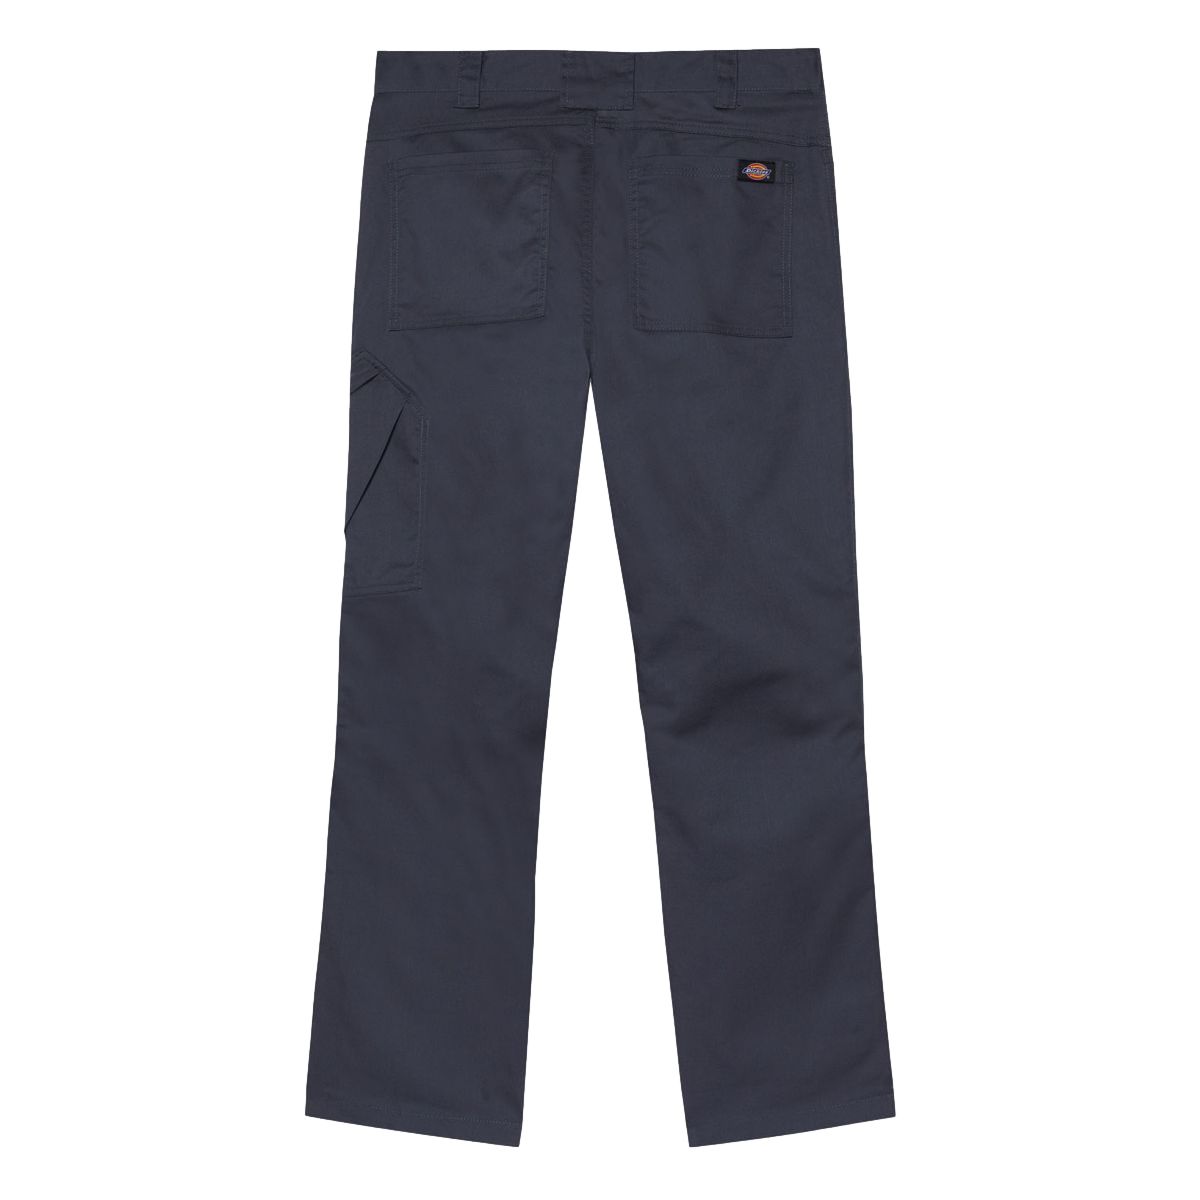 Pantalon de travail Action Flex gris - Dickies - Taille 44 2